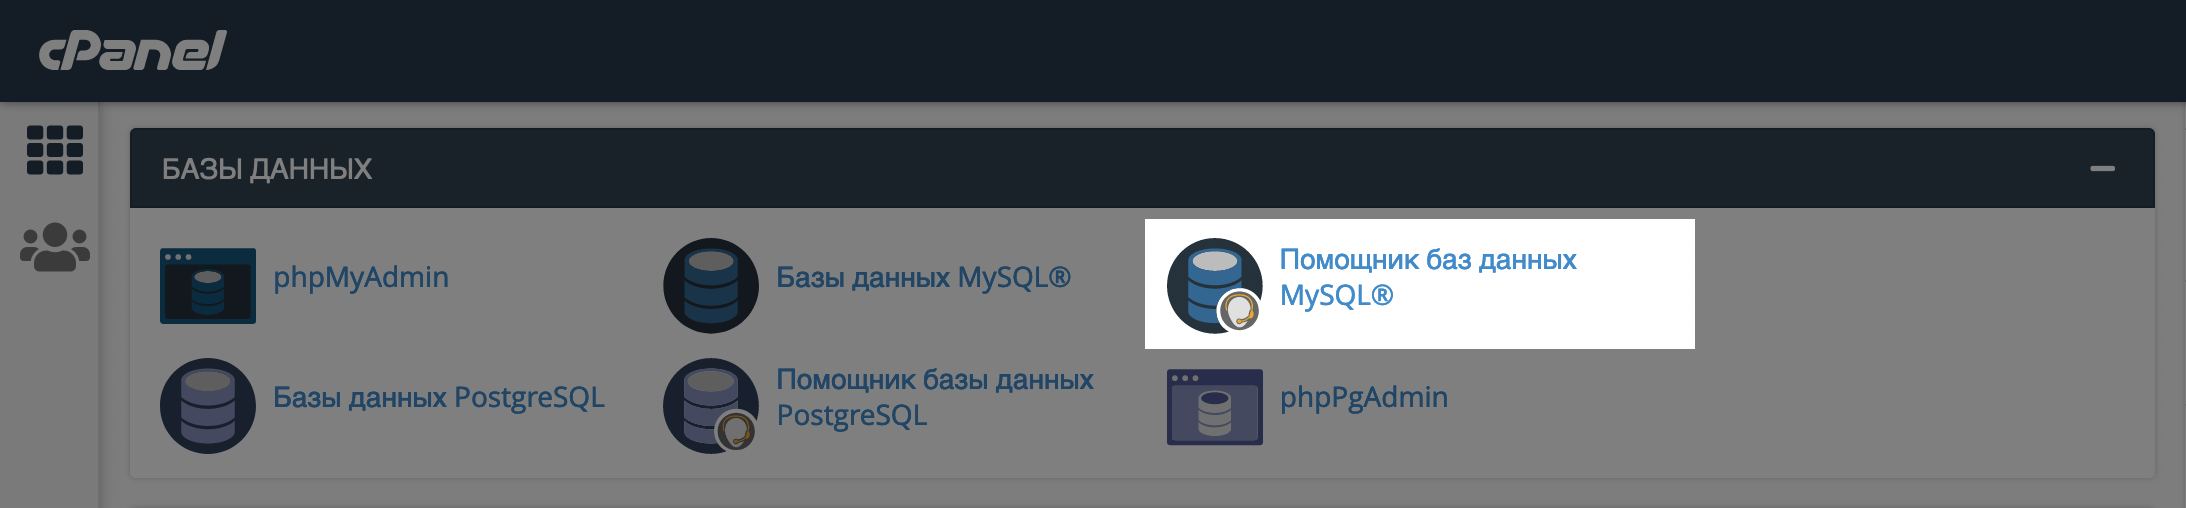 Как установить WP вручную — Приложение «Помощник баз данных MySQL» на главной странице cPanel